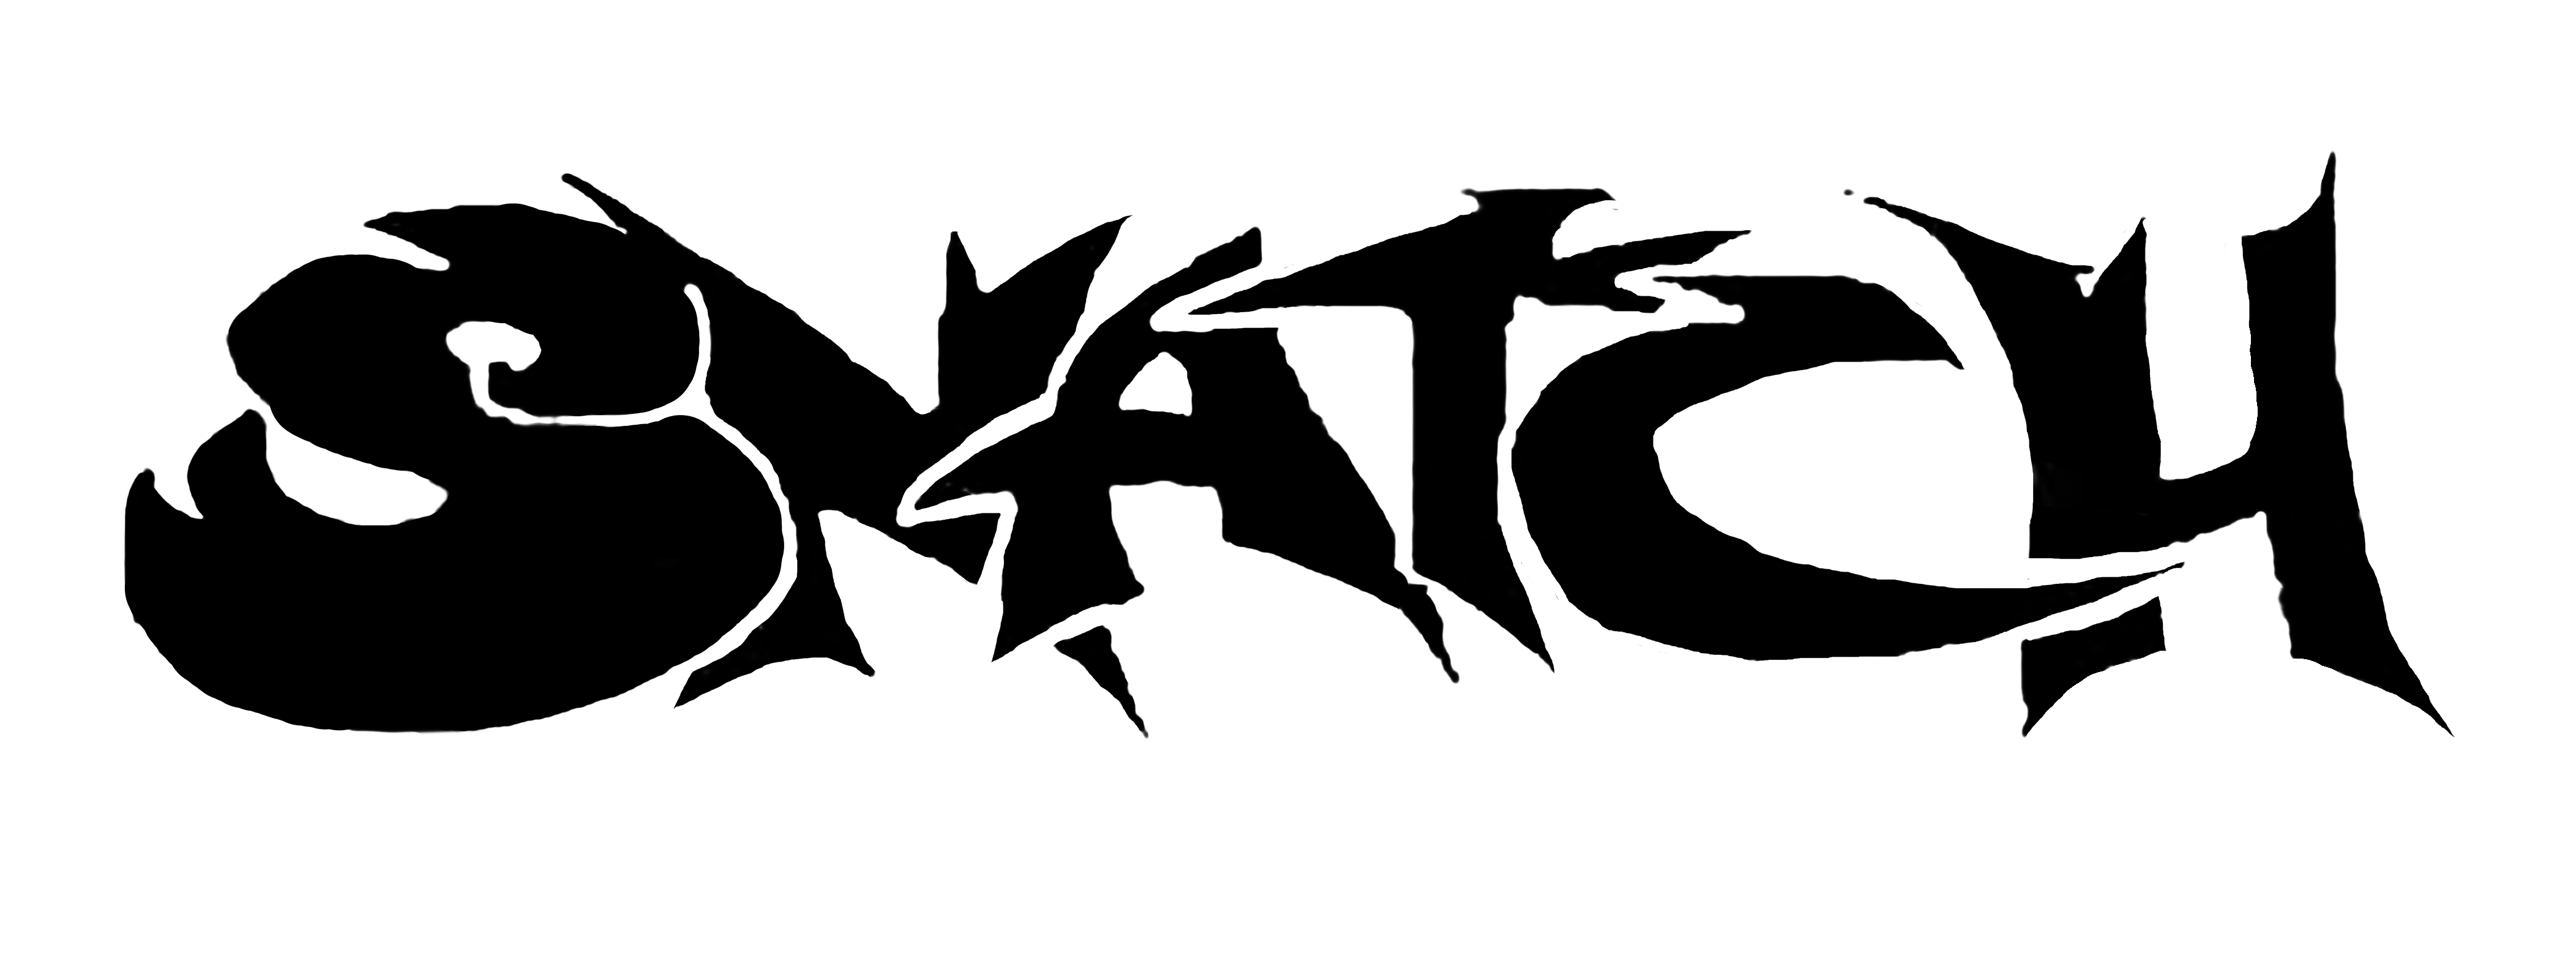 The Snatch Mcc